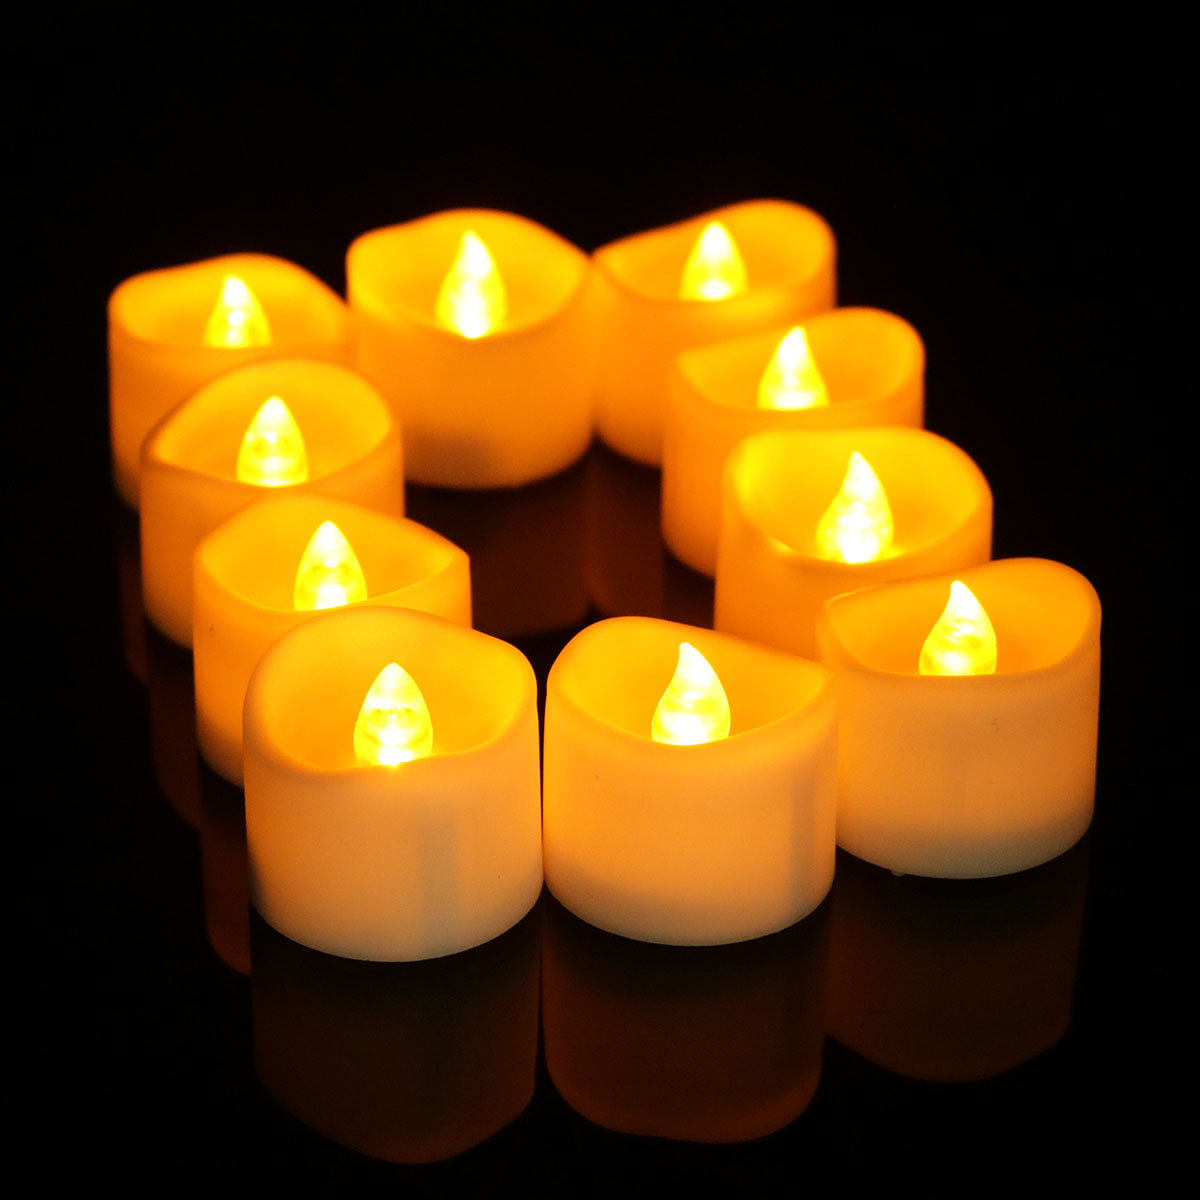 现货LED电子蜡烛LED茶蜡灯家居装饰定时电子蜡烛婚礼布置黄闪蜡烛-阿里巴巴